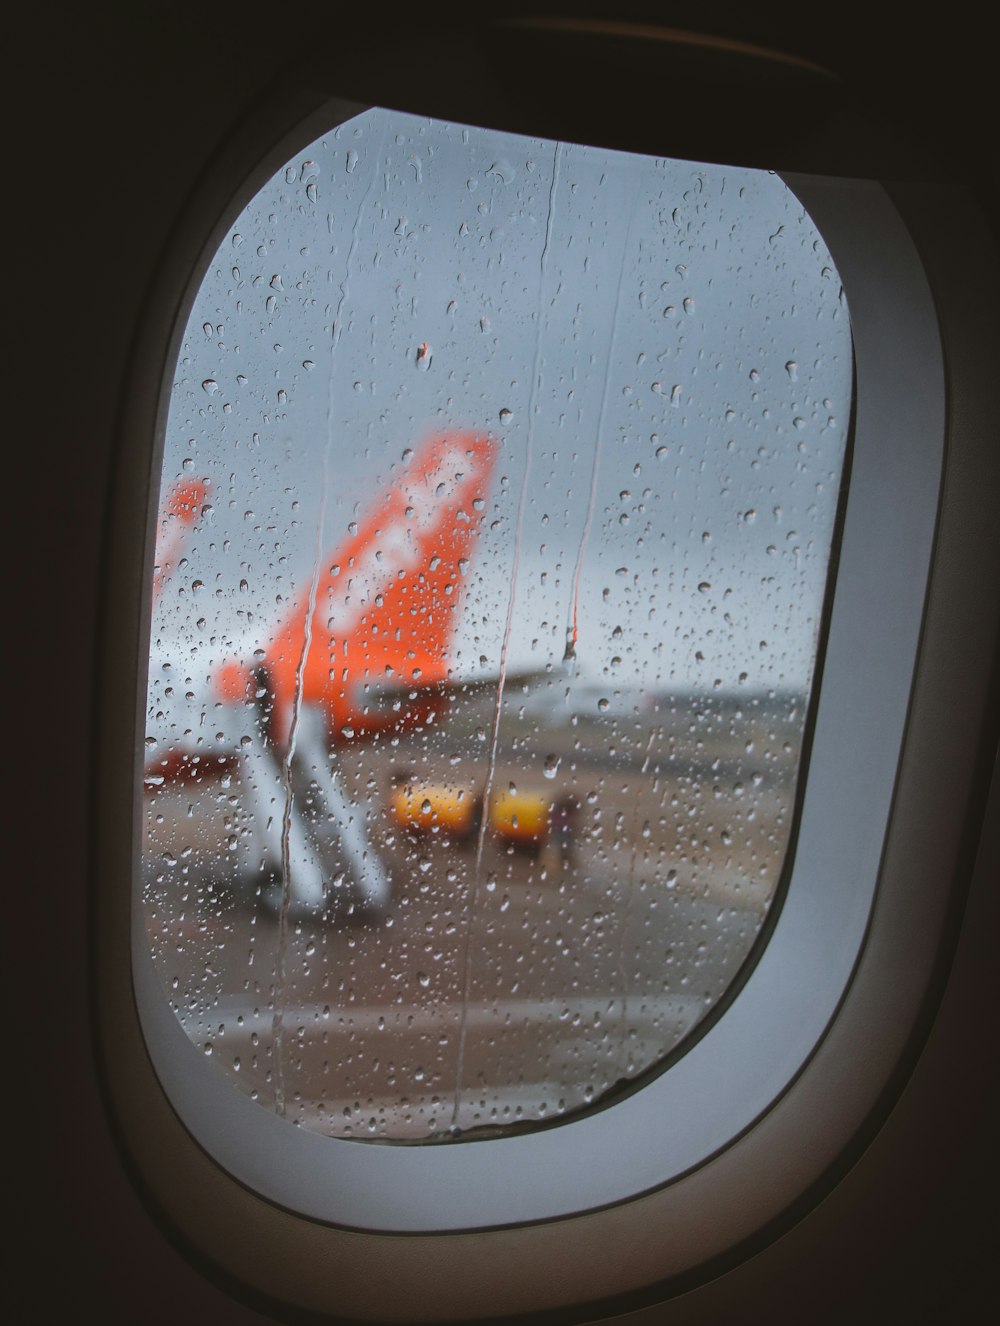 rocío de agua en la ventana del avión